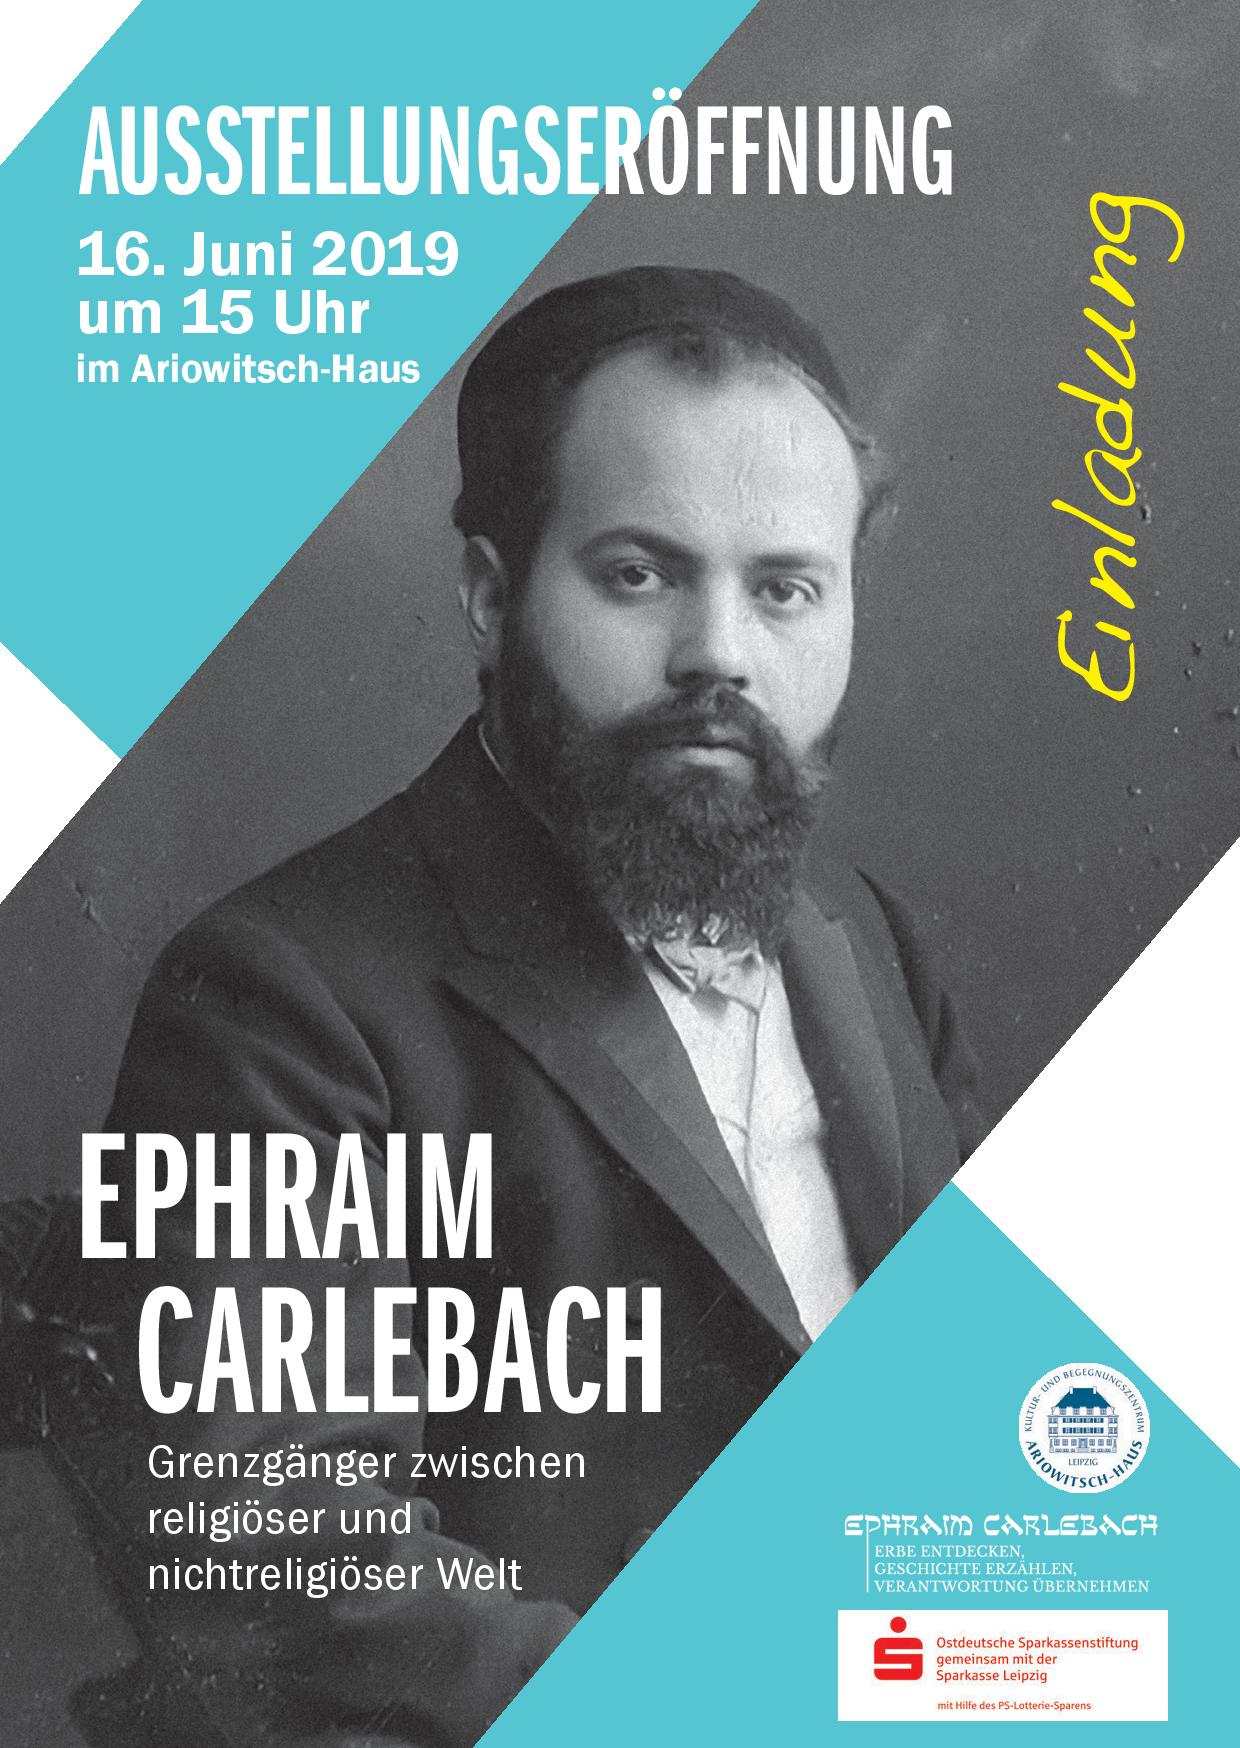 (c) Carlebach.info